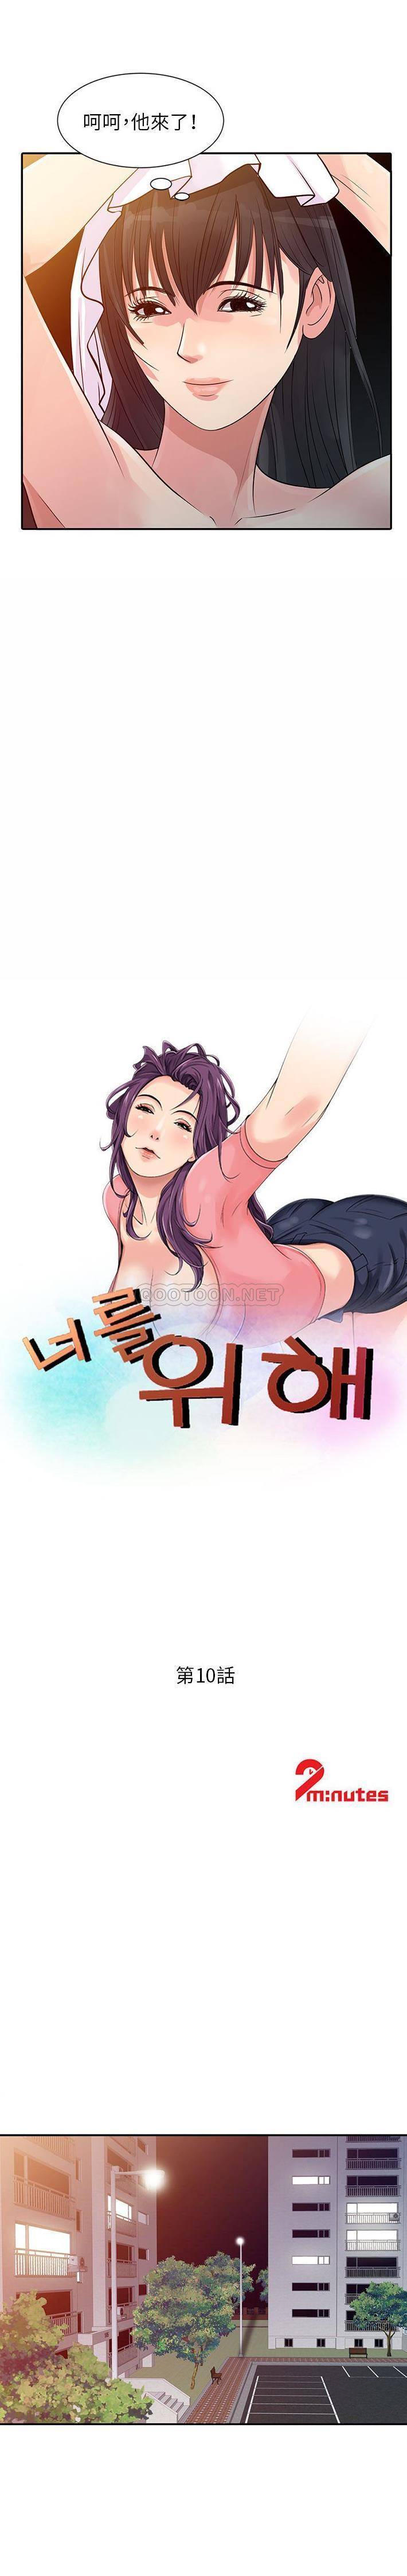 韩国污漫画 征服的滋味 第10话 2